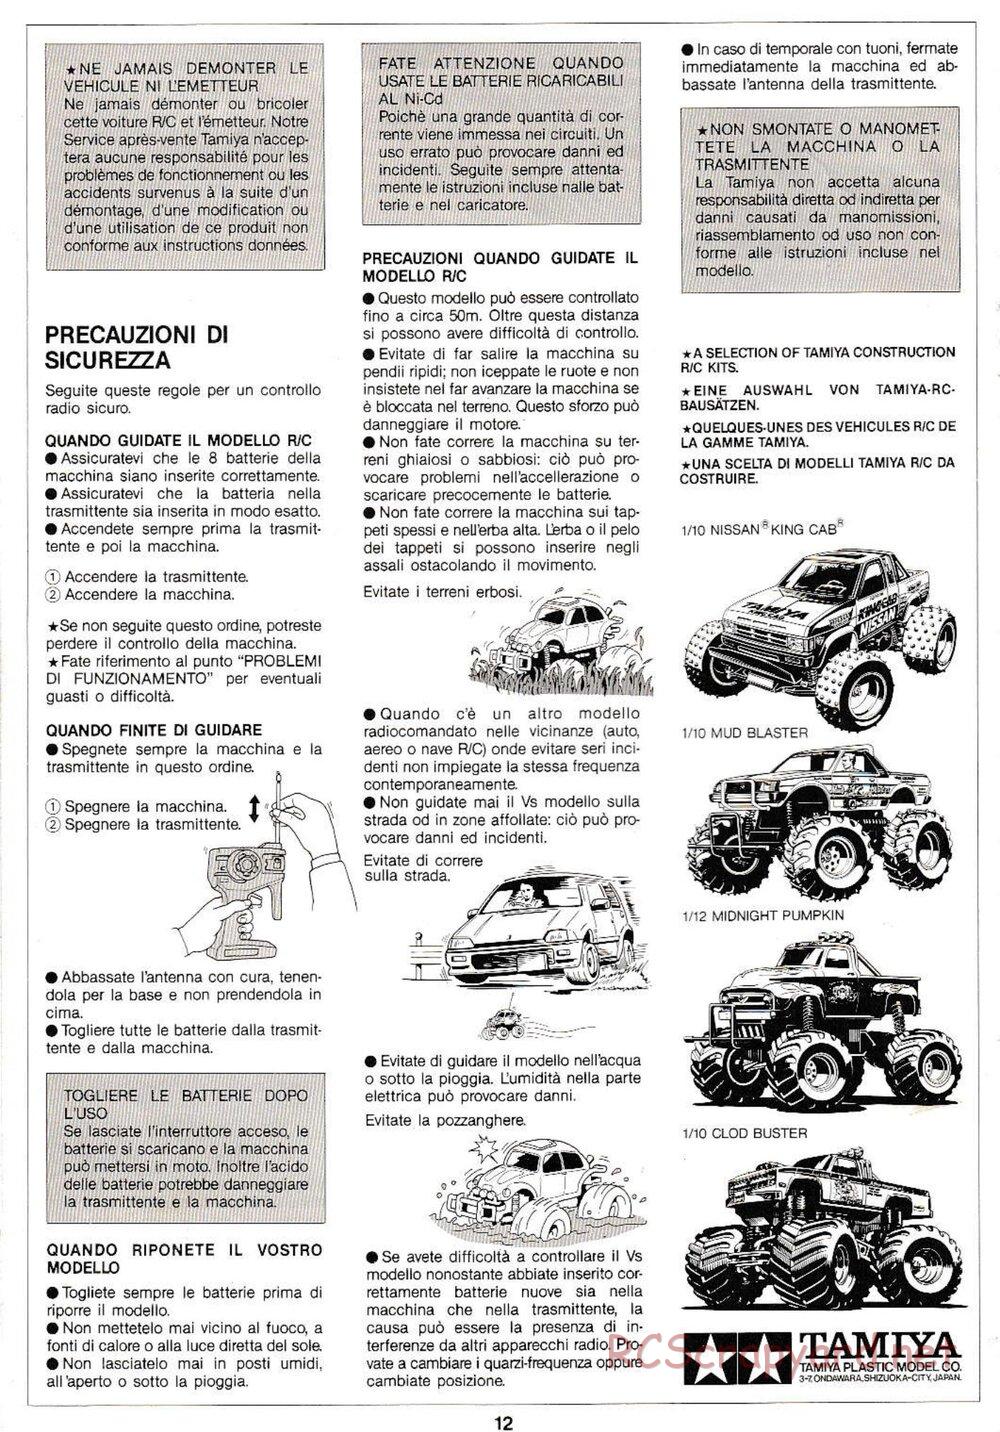 Tamiya - Monster Beetle QD Chassis - Manual - Page 12